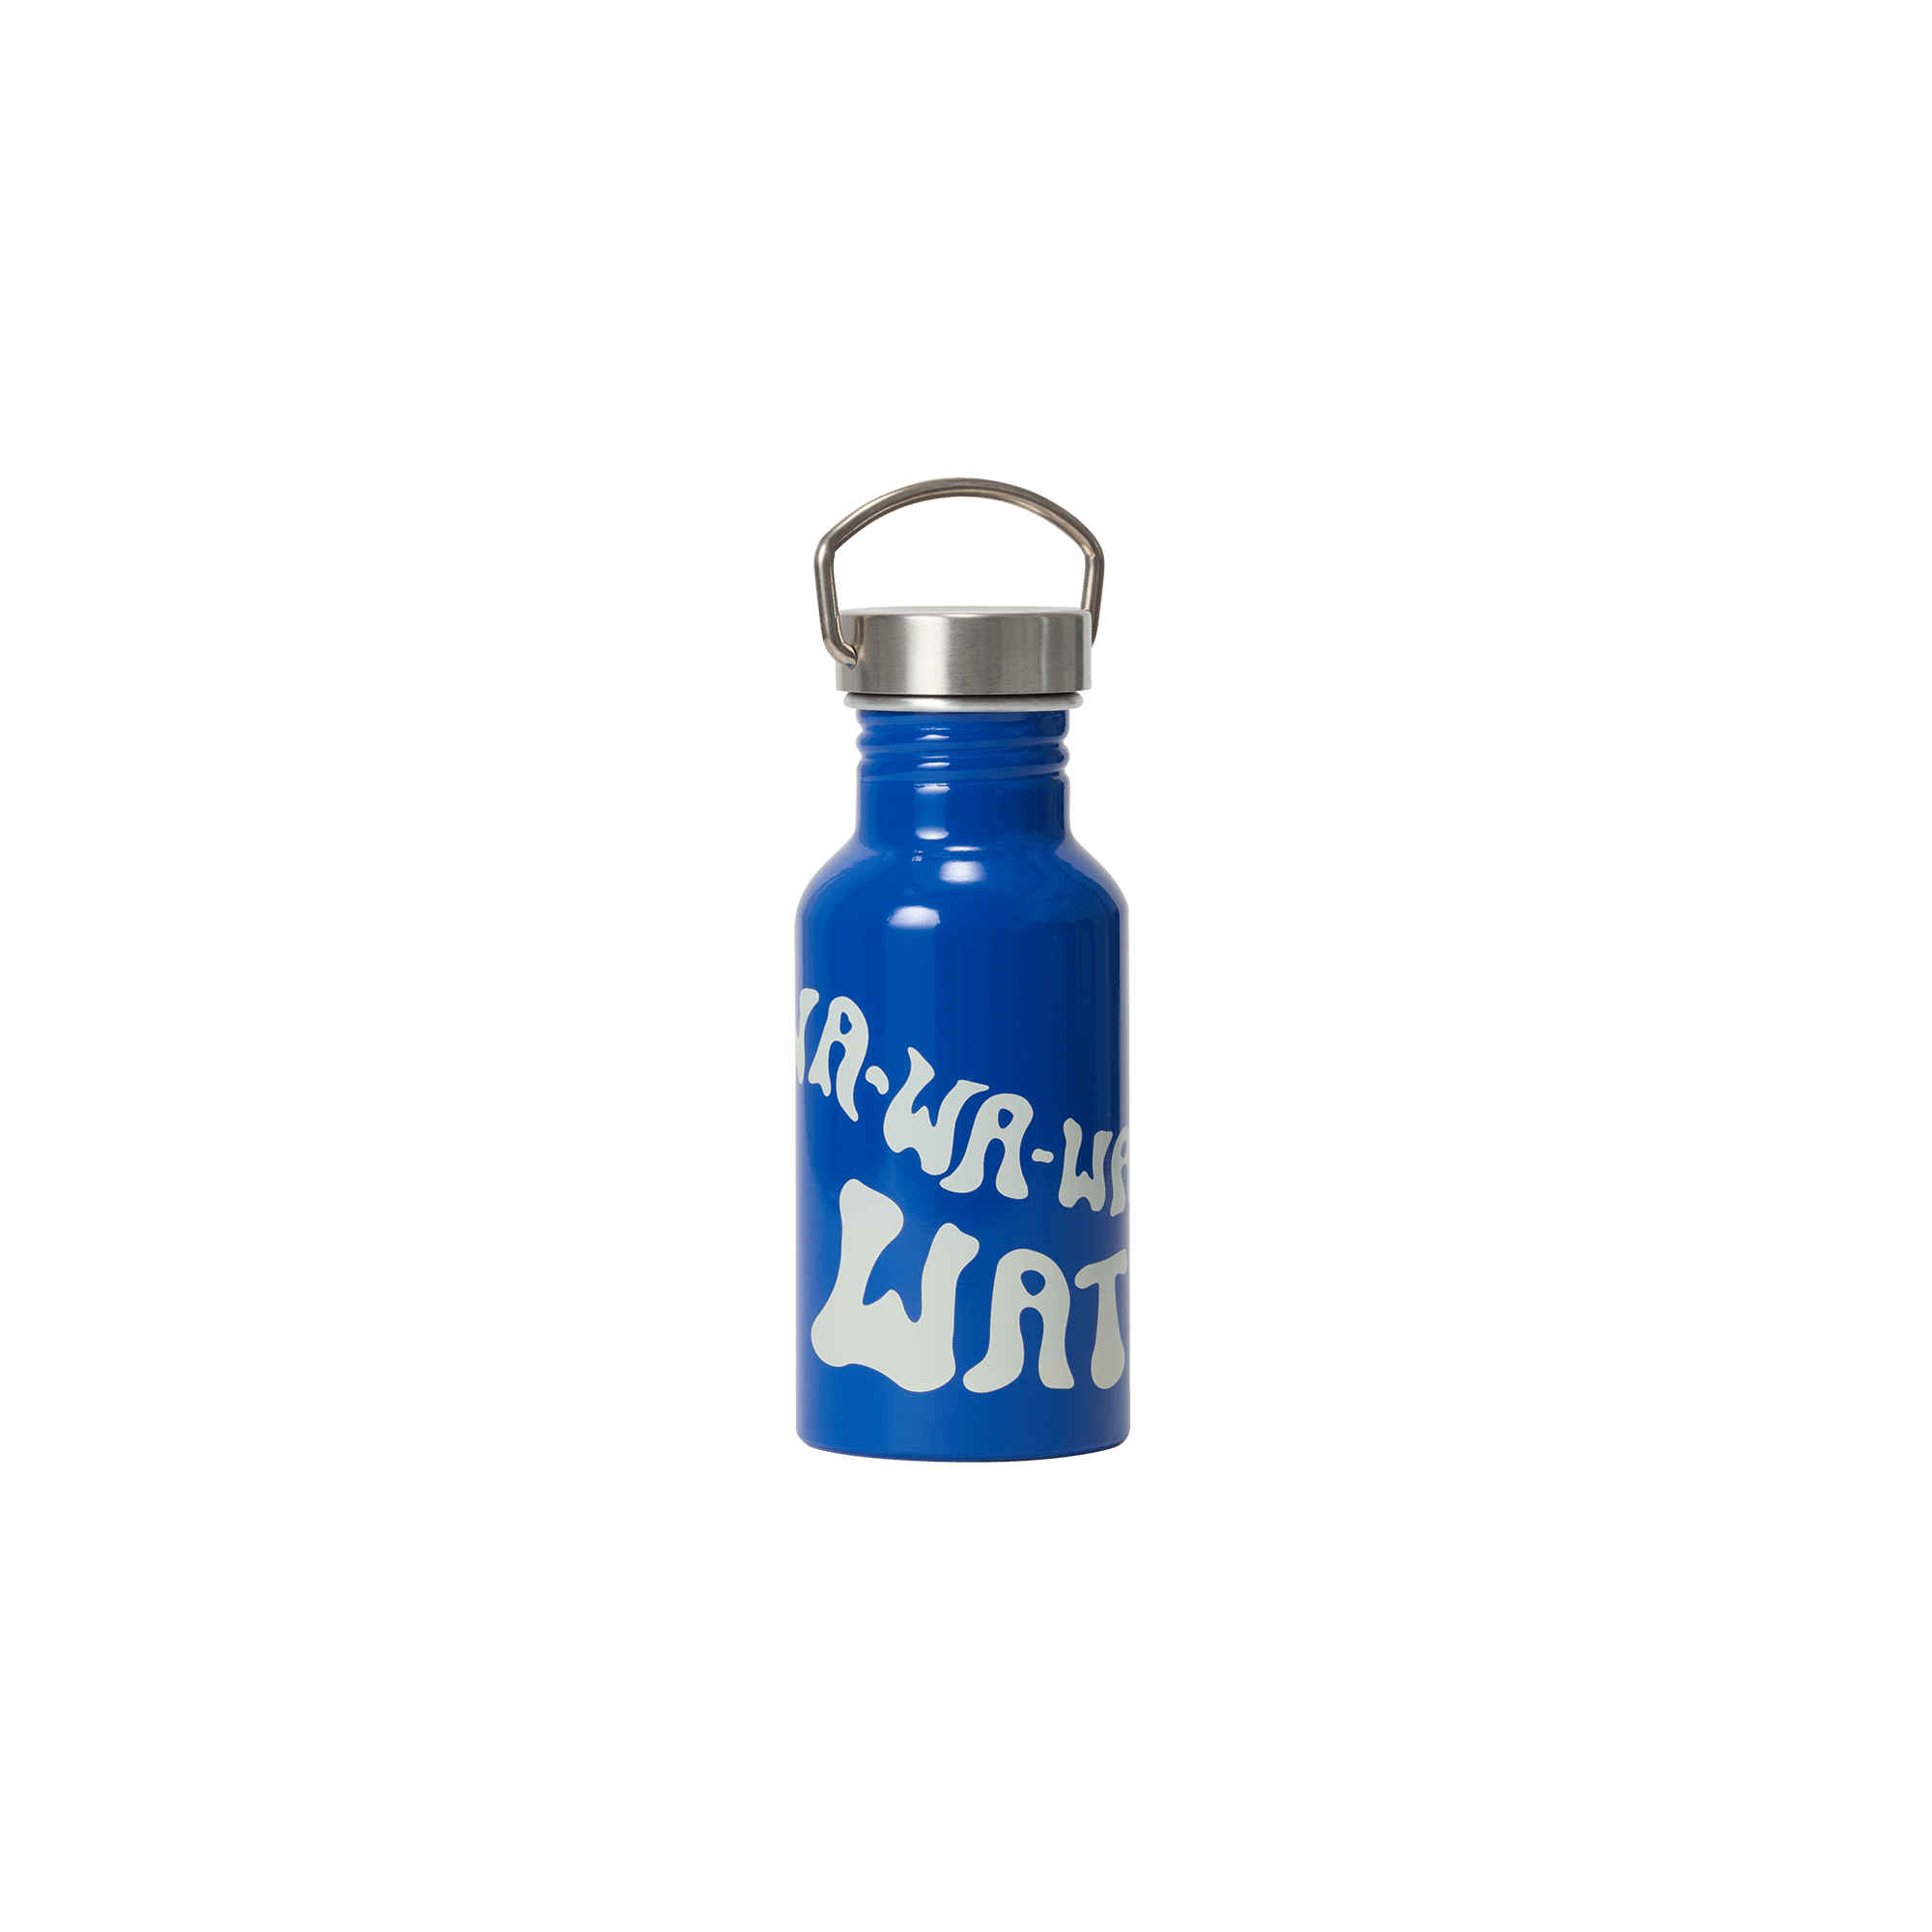 ABBA Waterloo water bottle